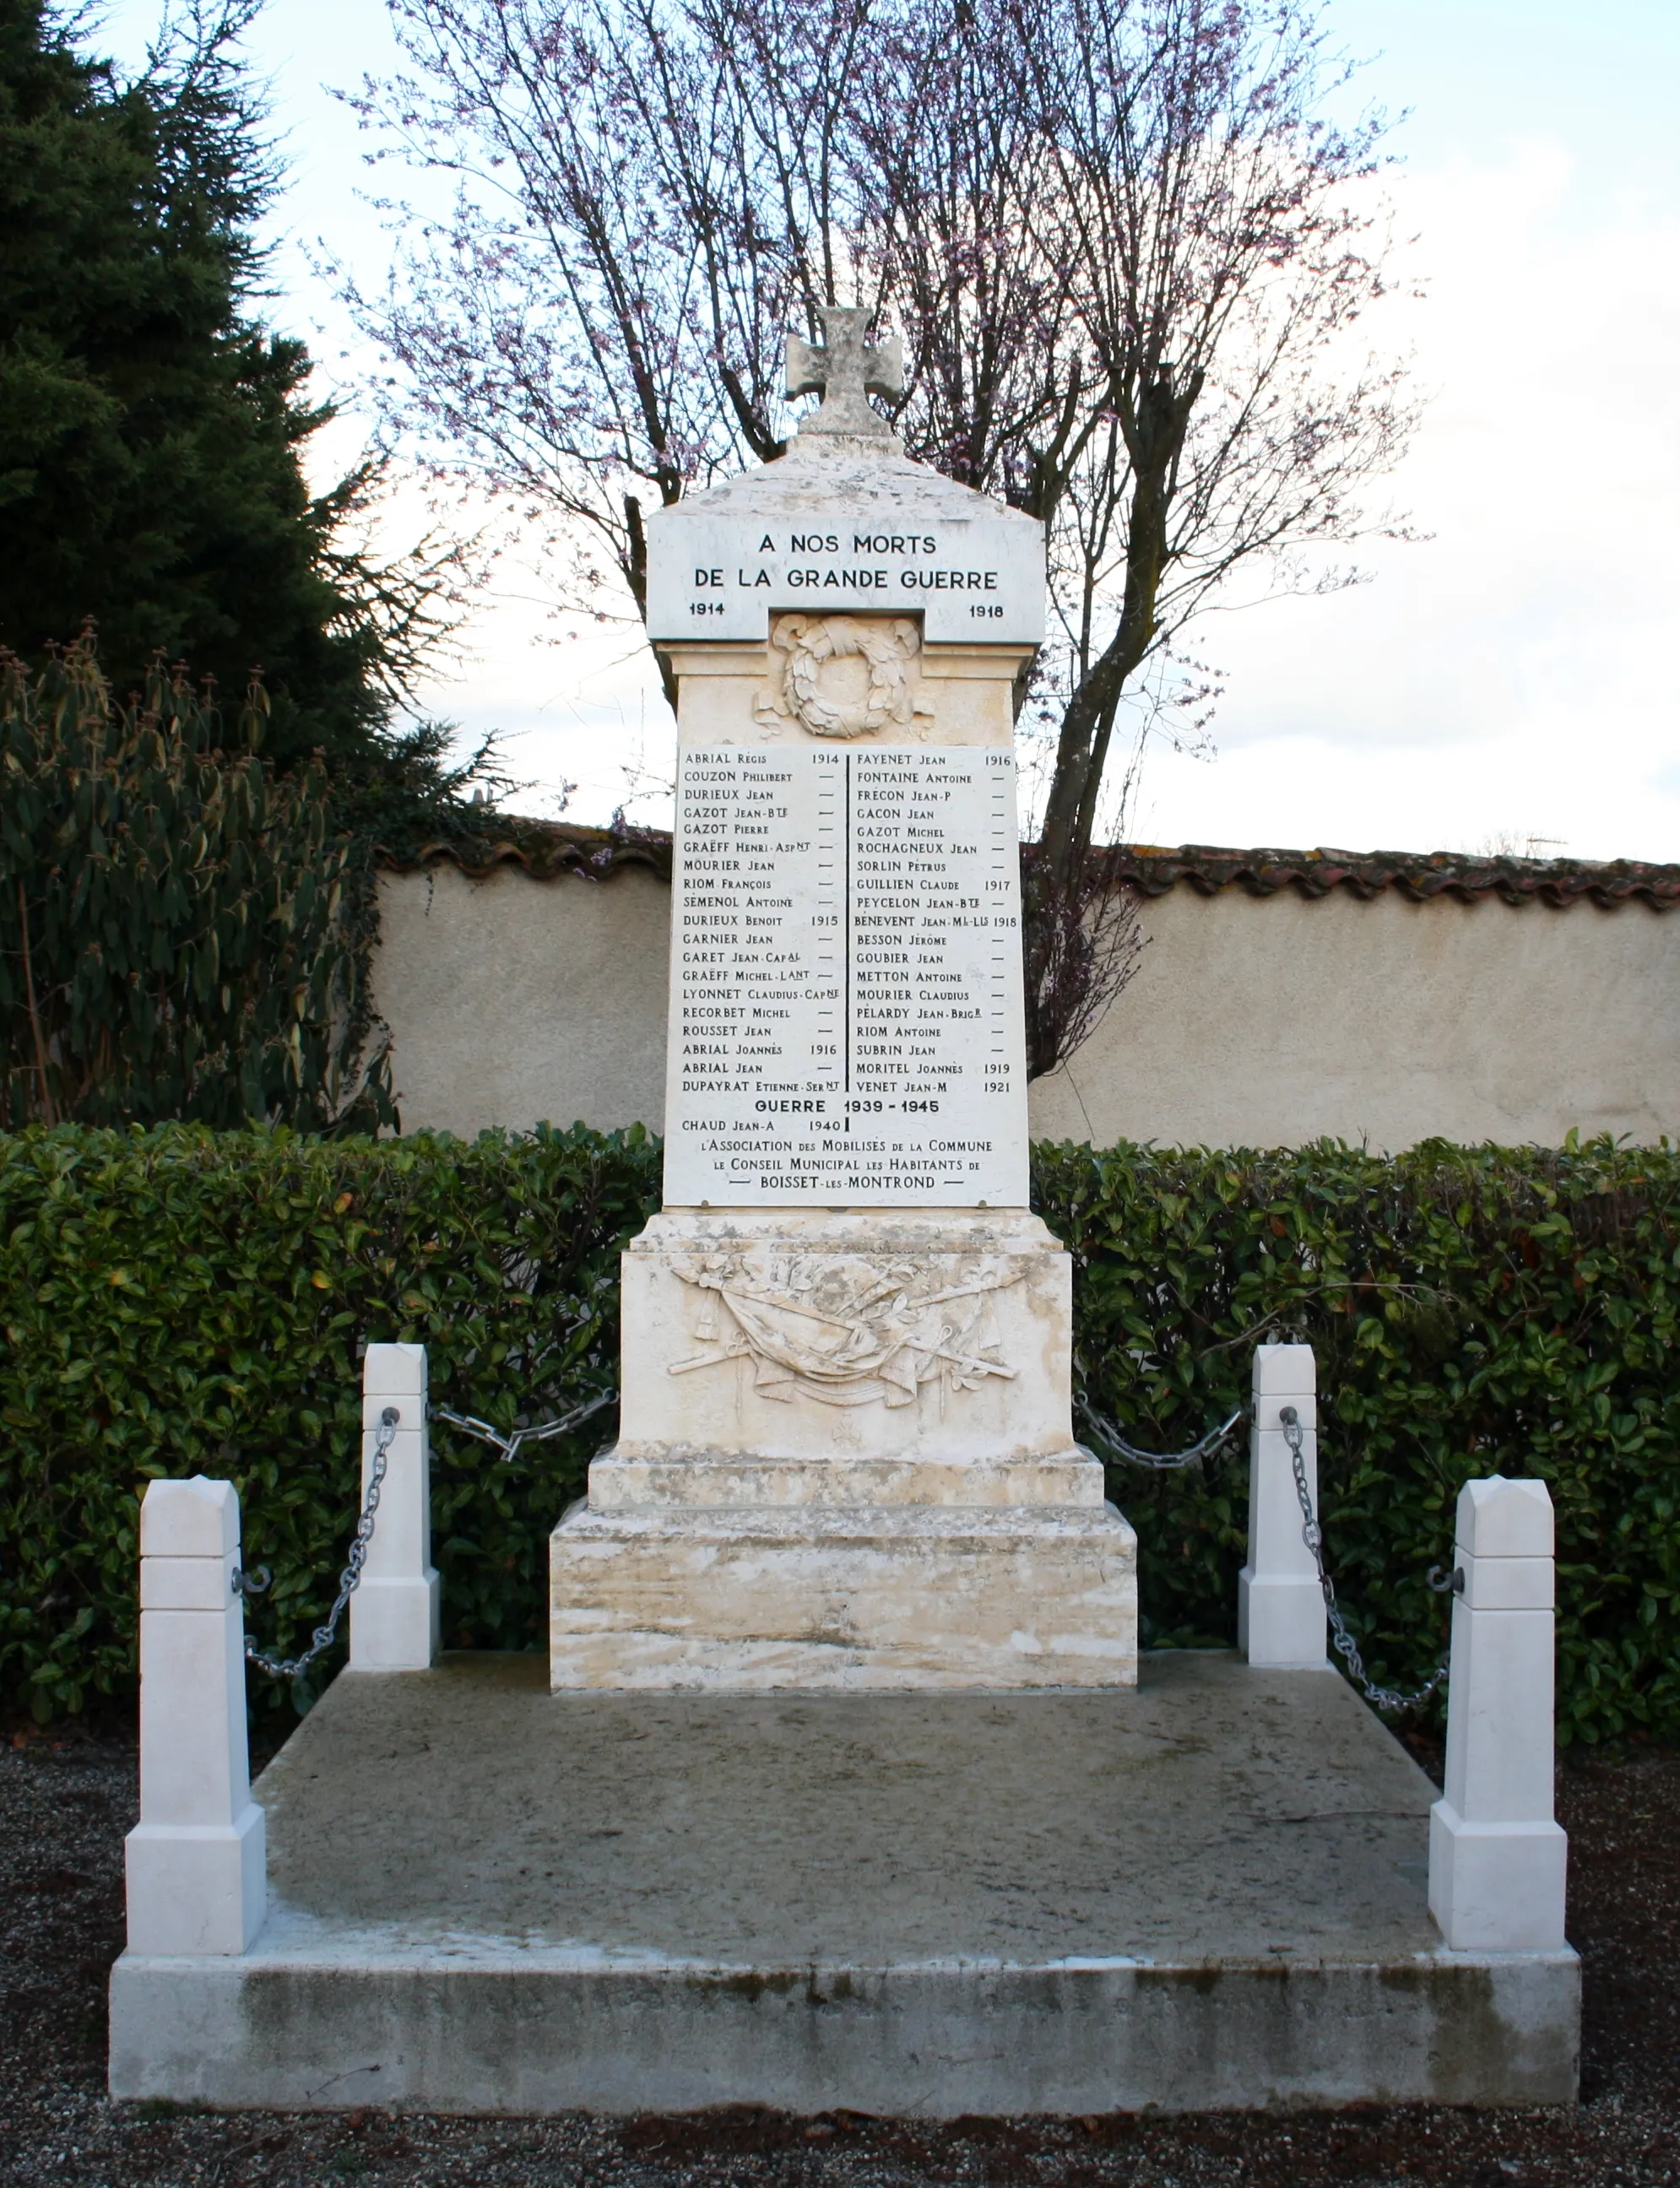 Photo showing: Monument aux morts de Boisset-lès-Montrond